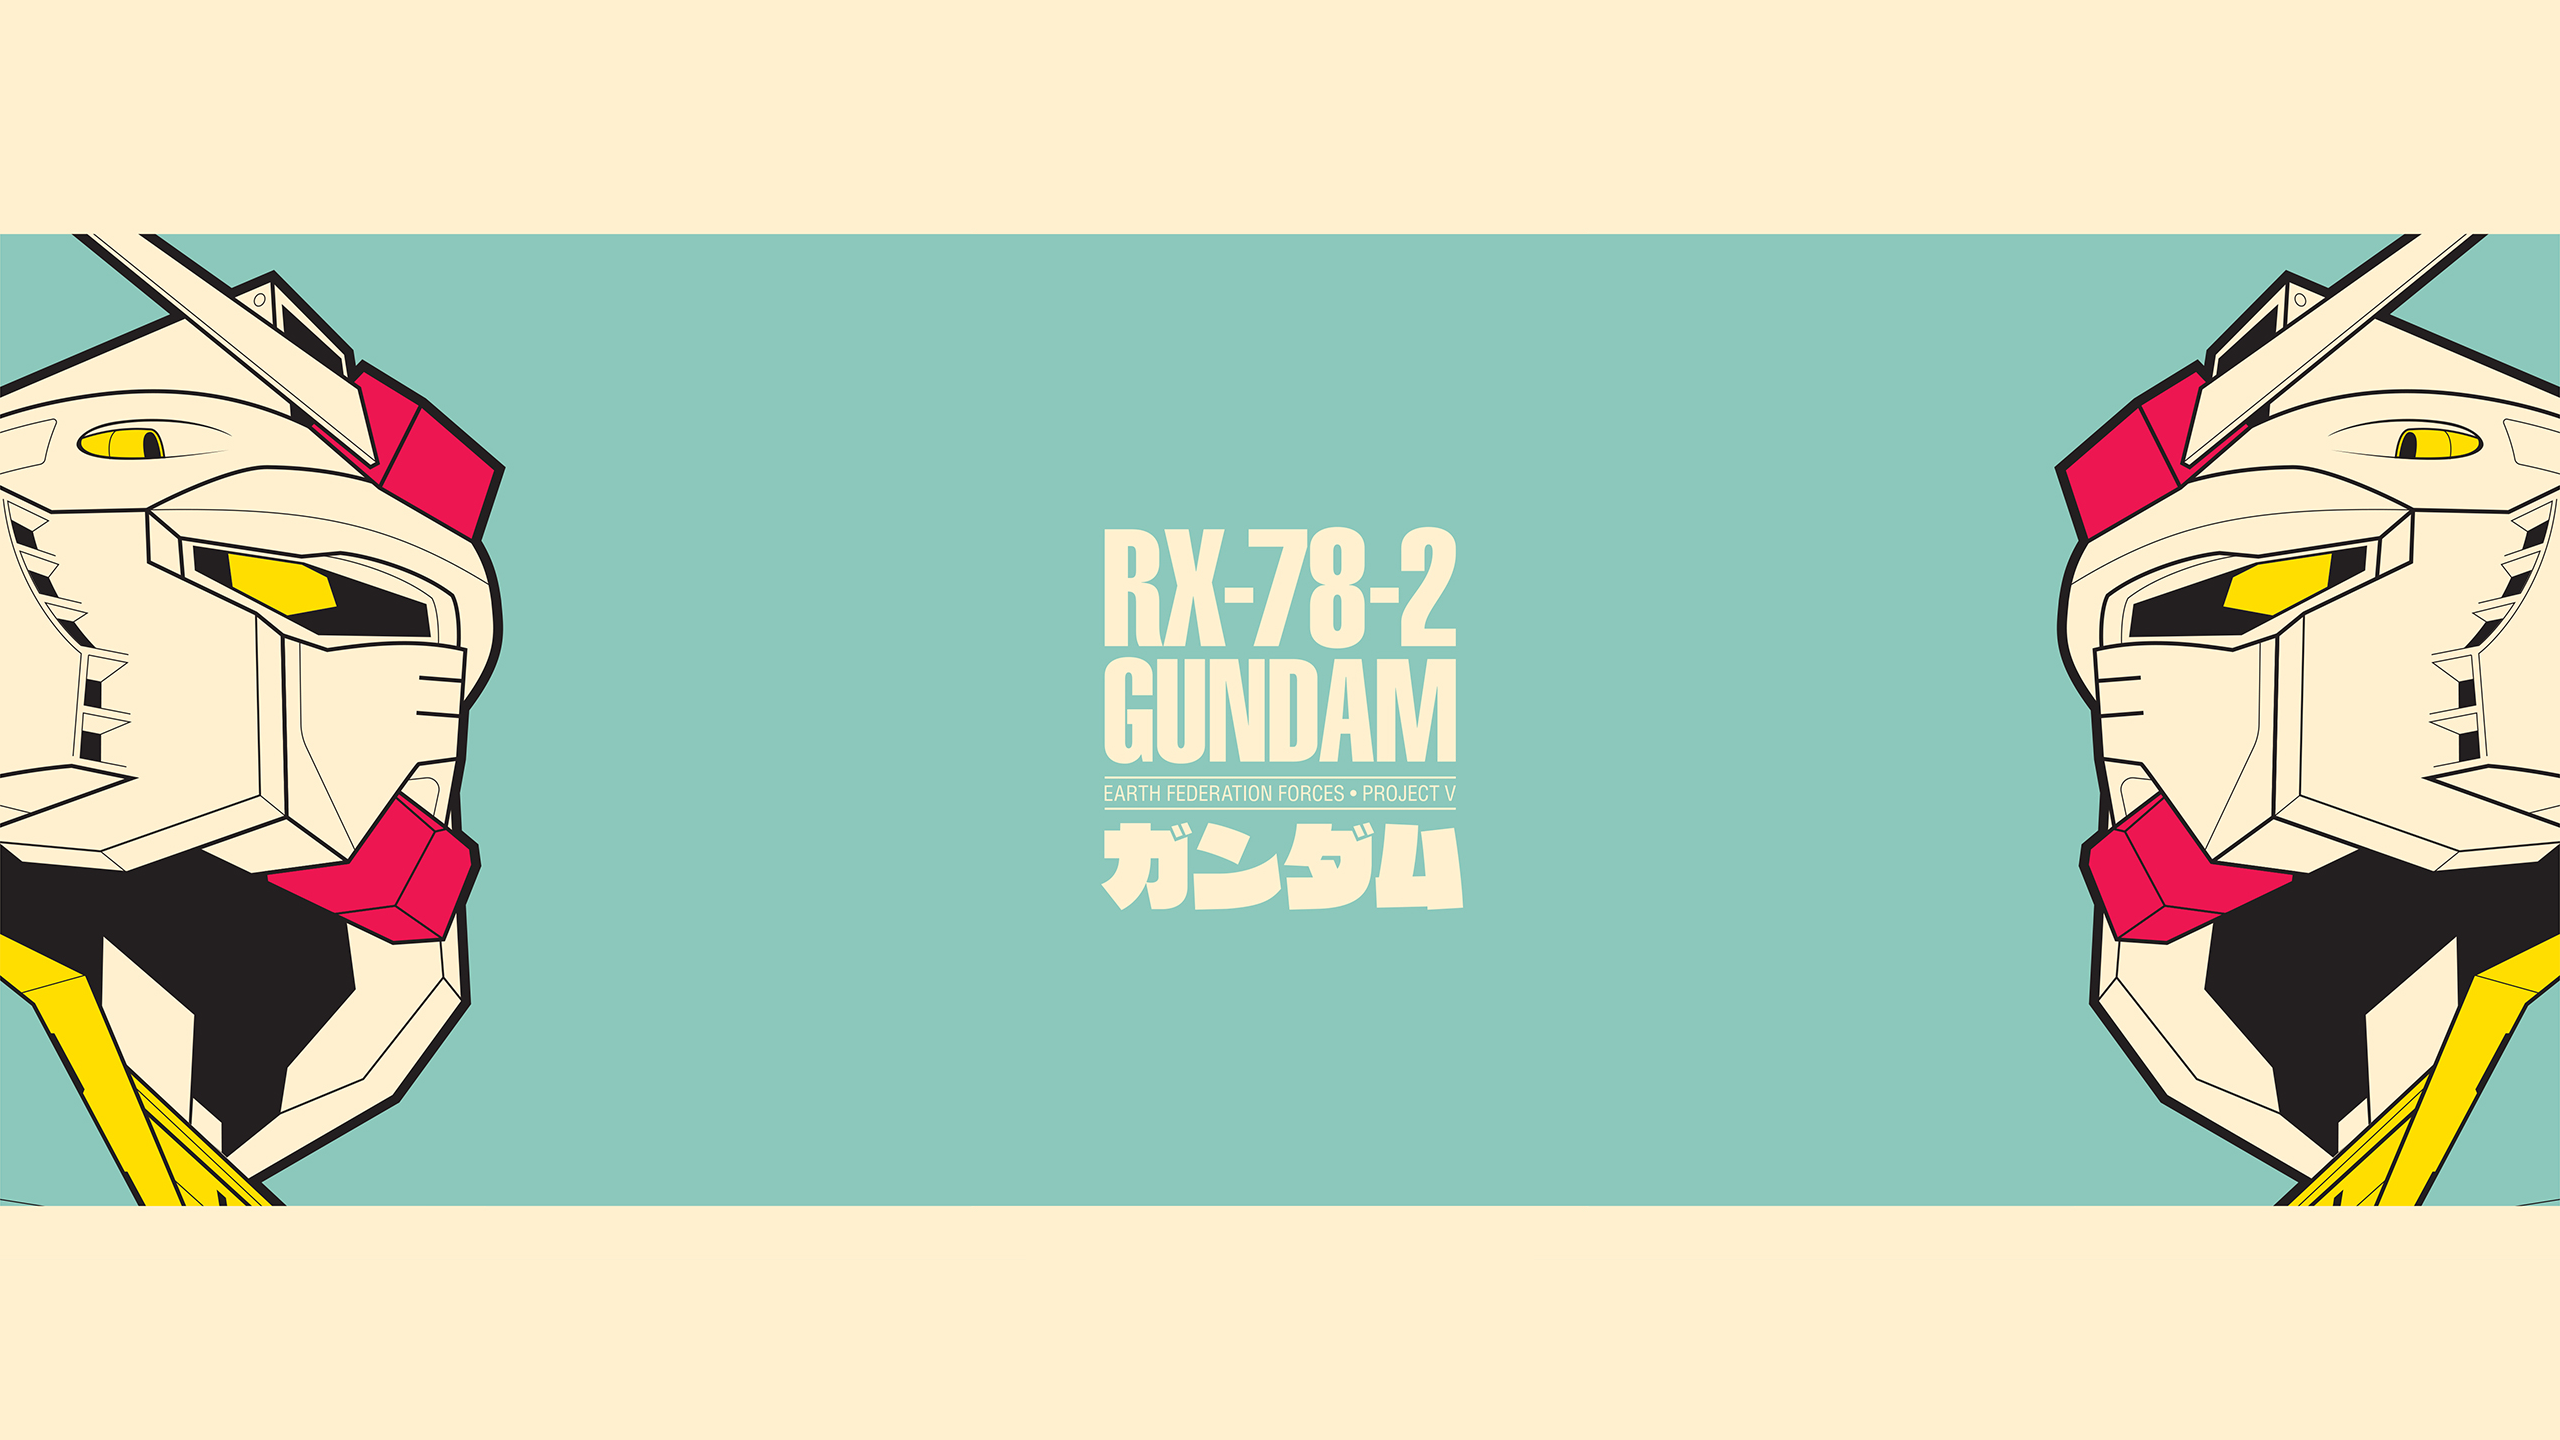 Anime 2560x1440 Mobile Suit Mobile Suit Gundam 0083: Stardust Memory Mobile Suit Gundam Mobile Suit Gundam ZZ Amuro Ray Gundam minimalism anime anime boys 4K